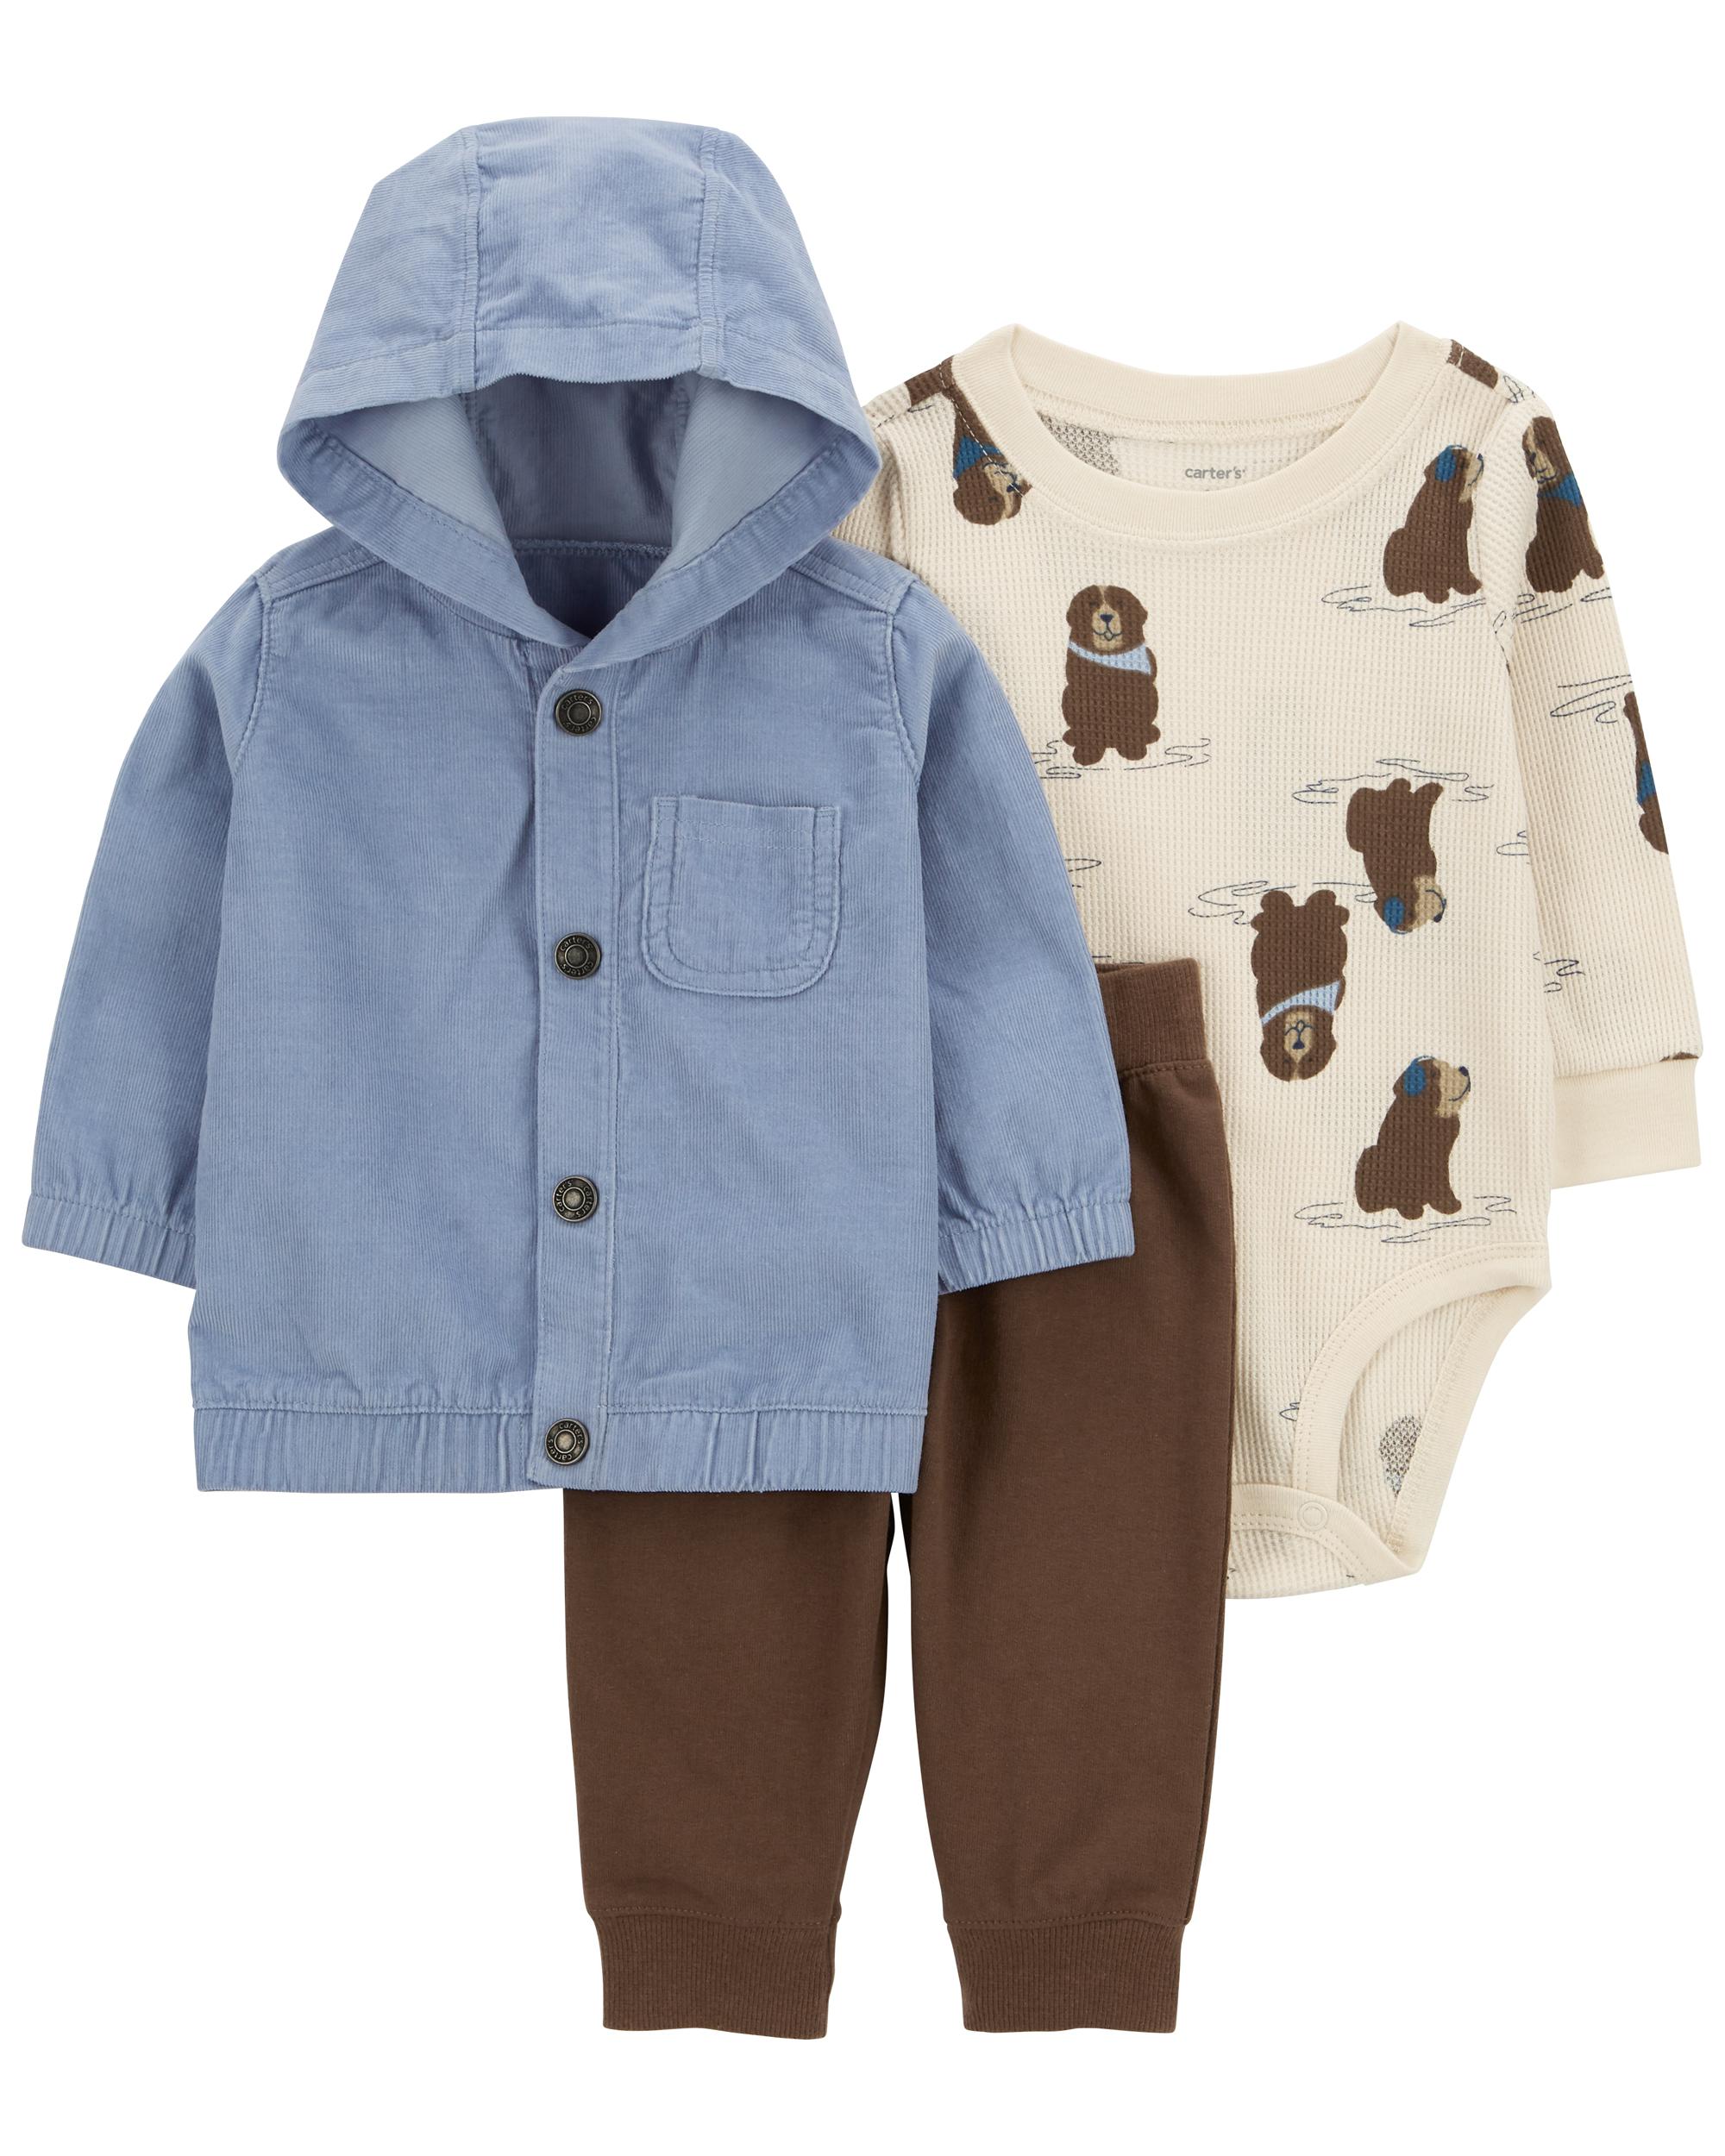 Carter's Infant Boy's 3-Piece Fleece Outfit Set - 1P824410-3M